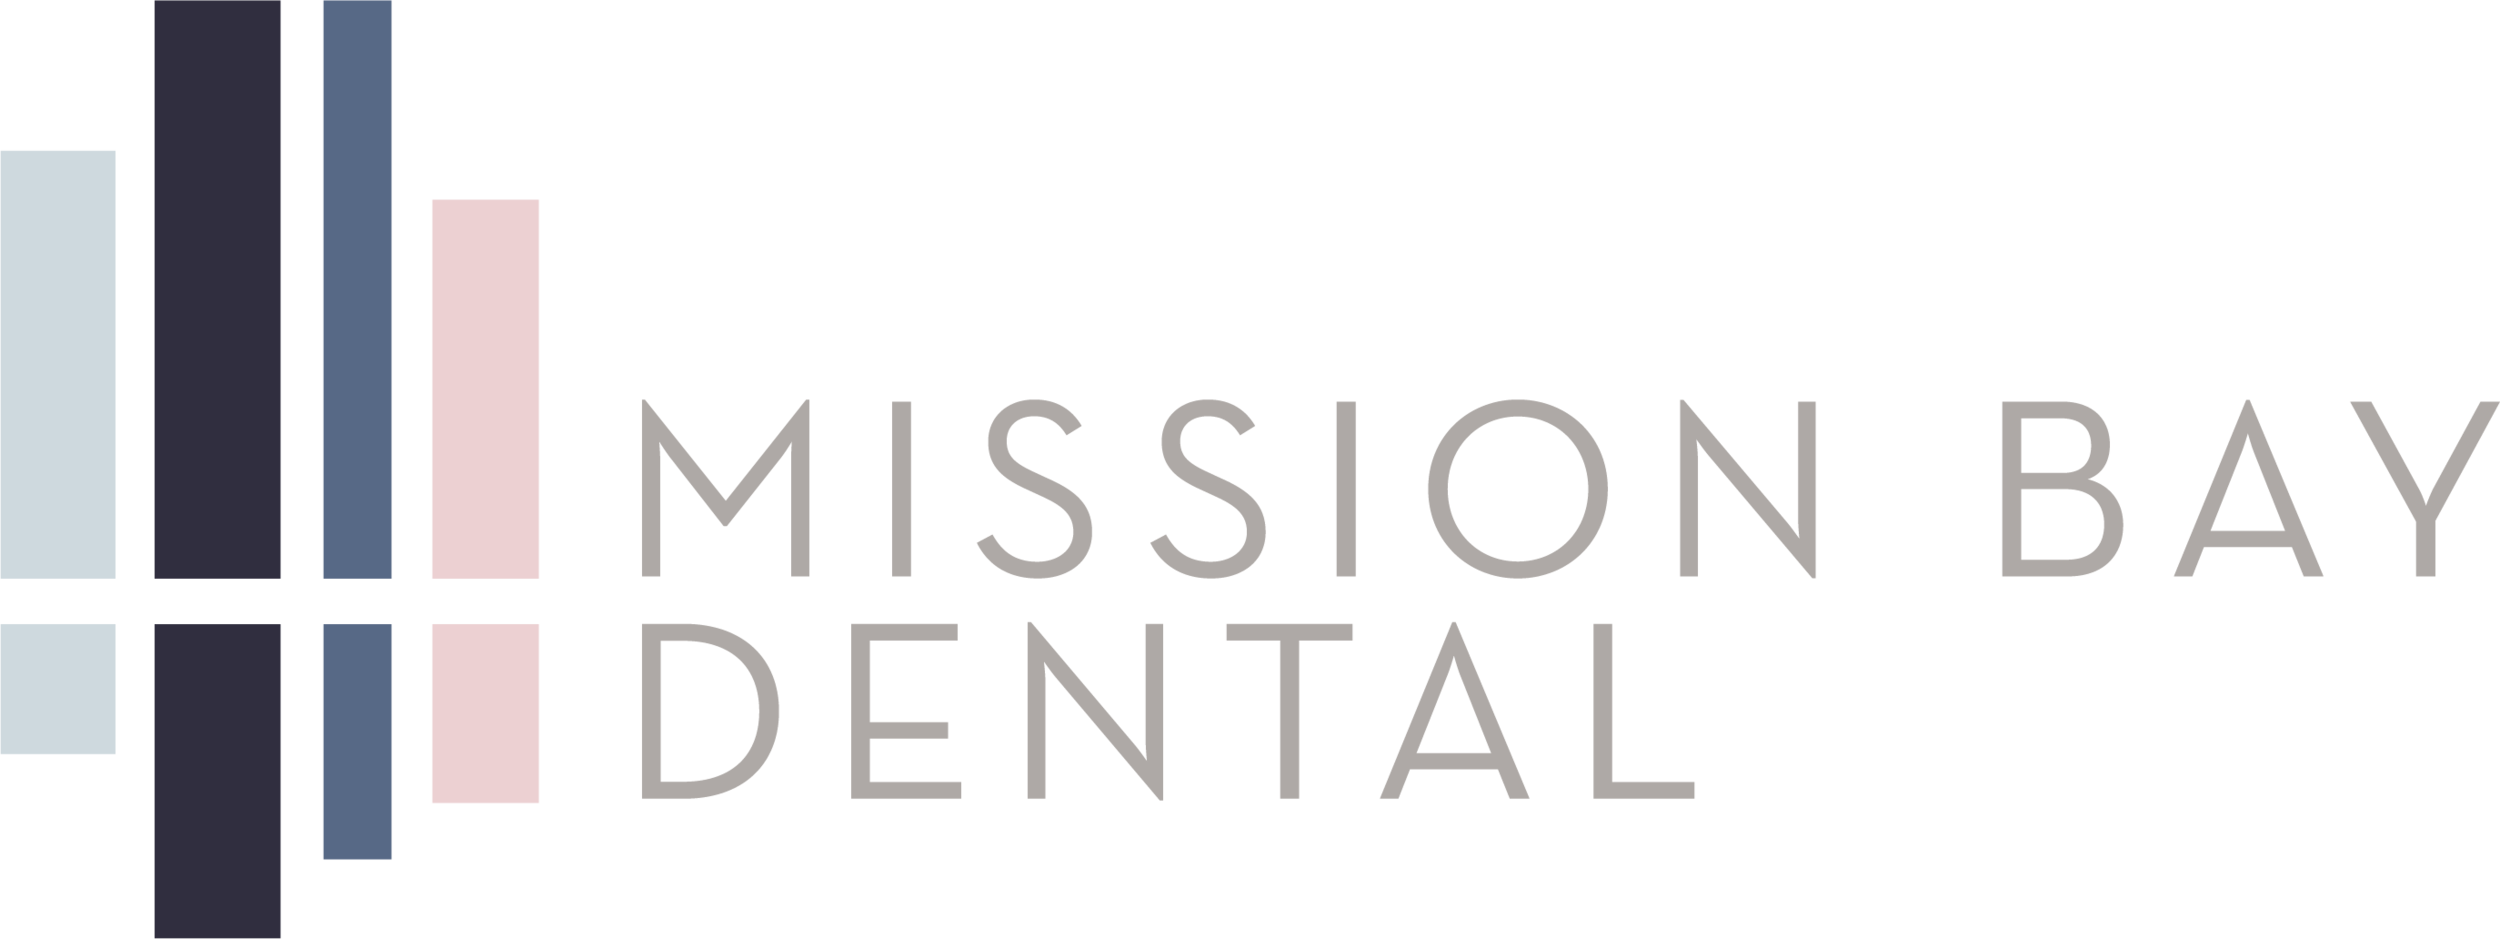 Mission Bay Dental